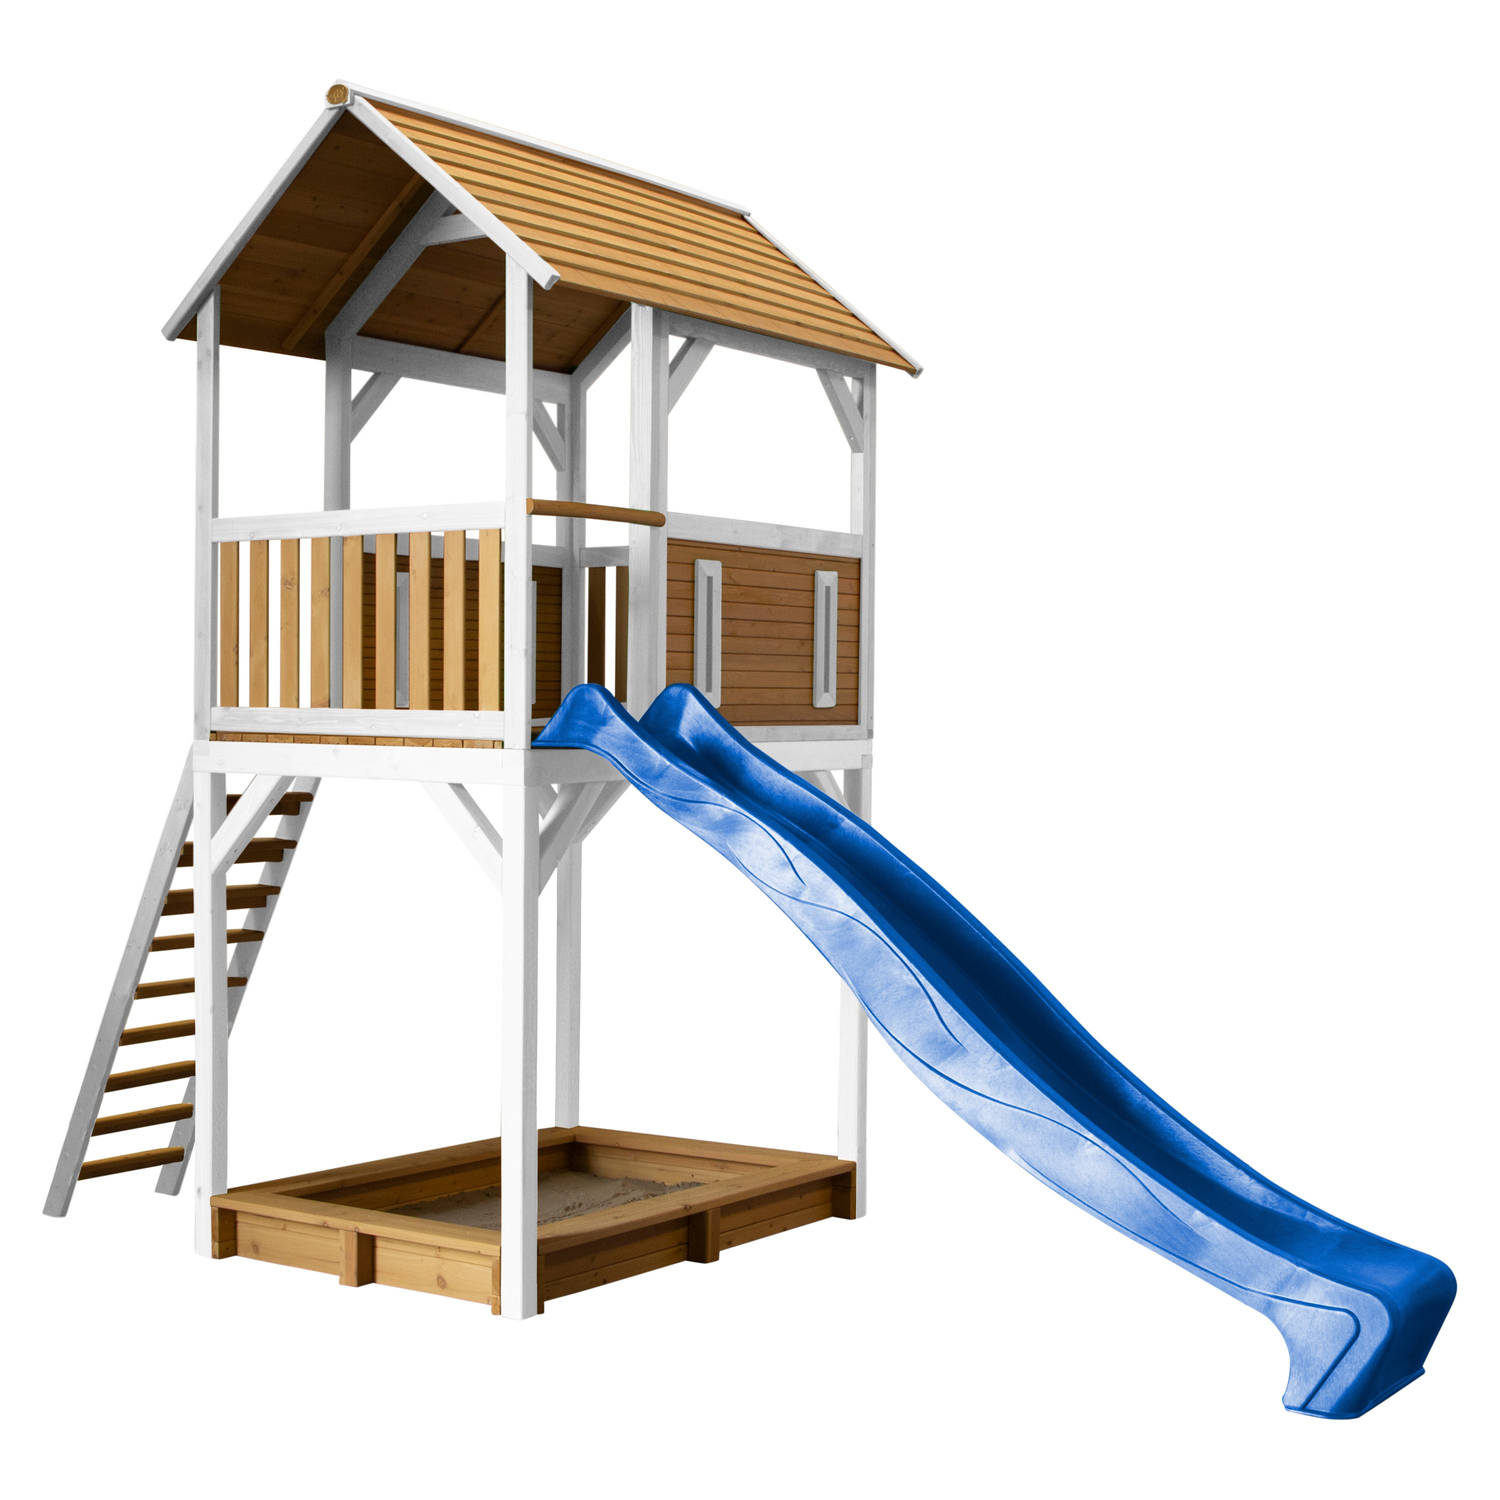 AXI Dory Speelhuis op palen, zandbak & blauwe glijbaan Speelhuisje voor de tuin / buiten in bruin & wit van FSC hout